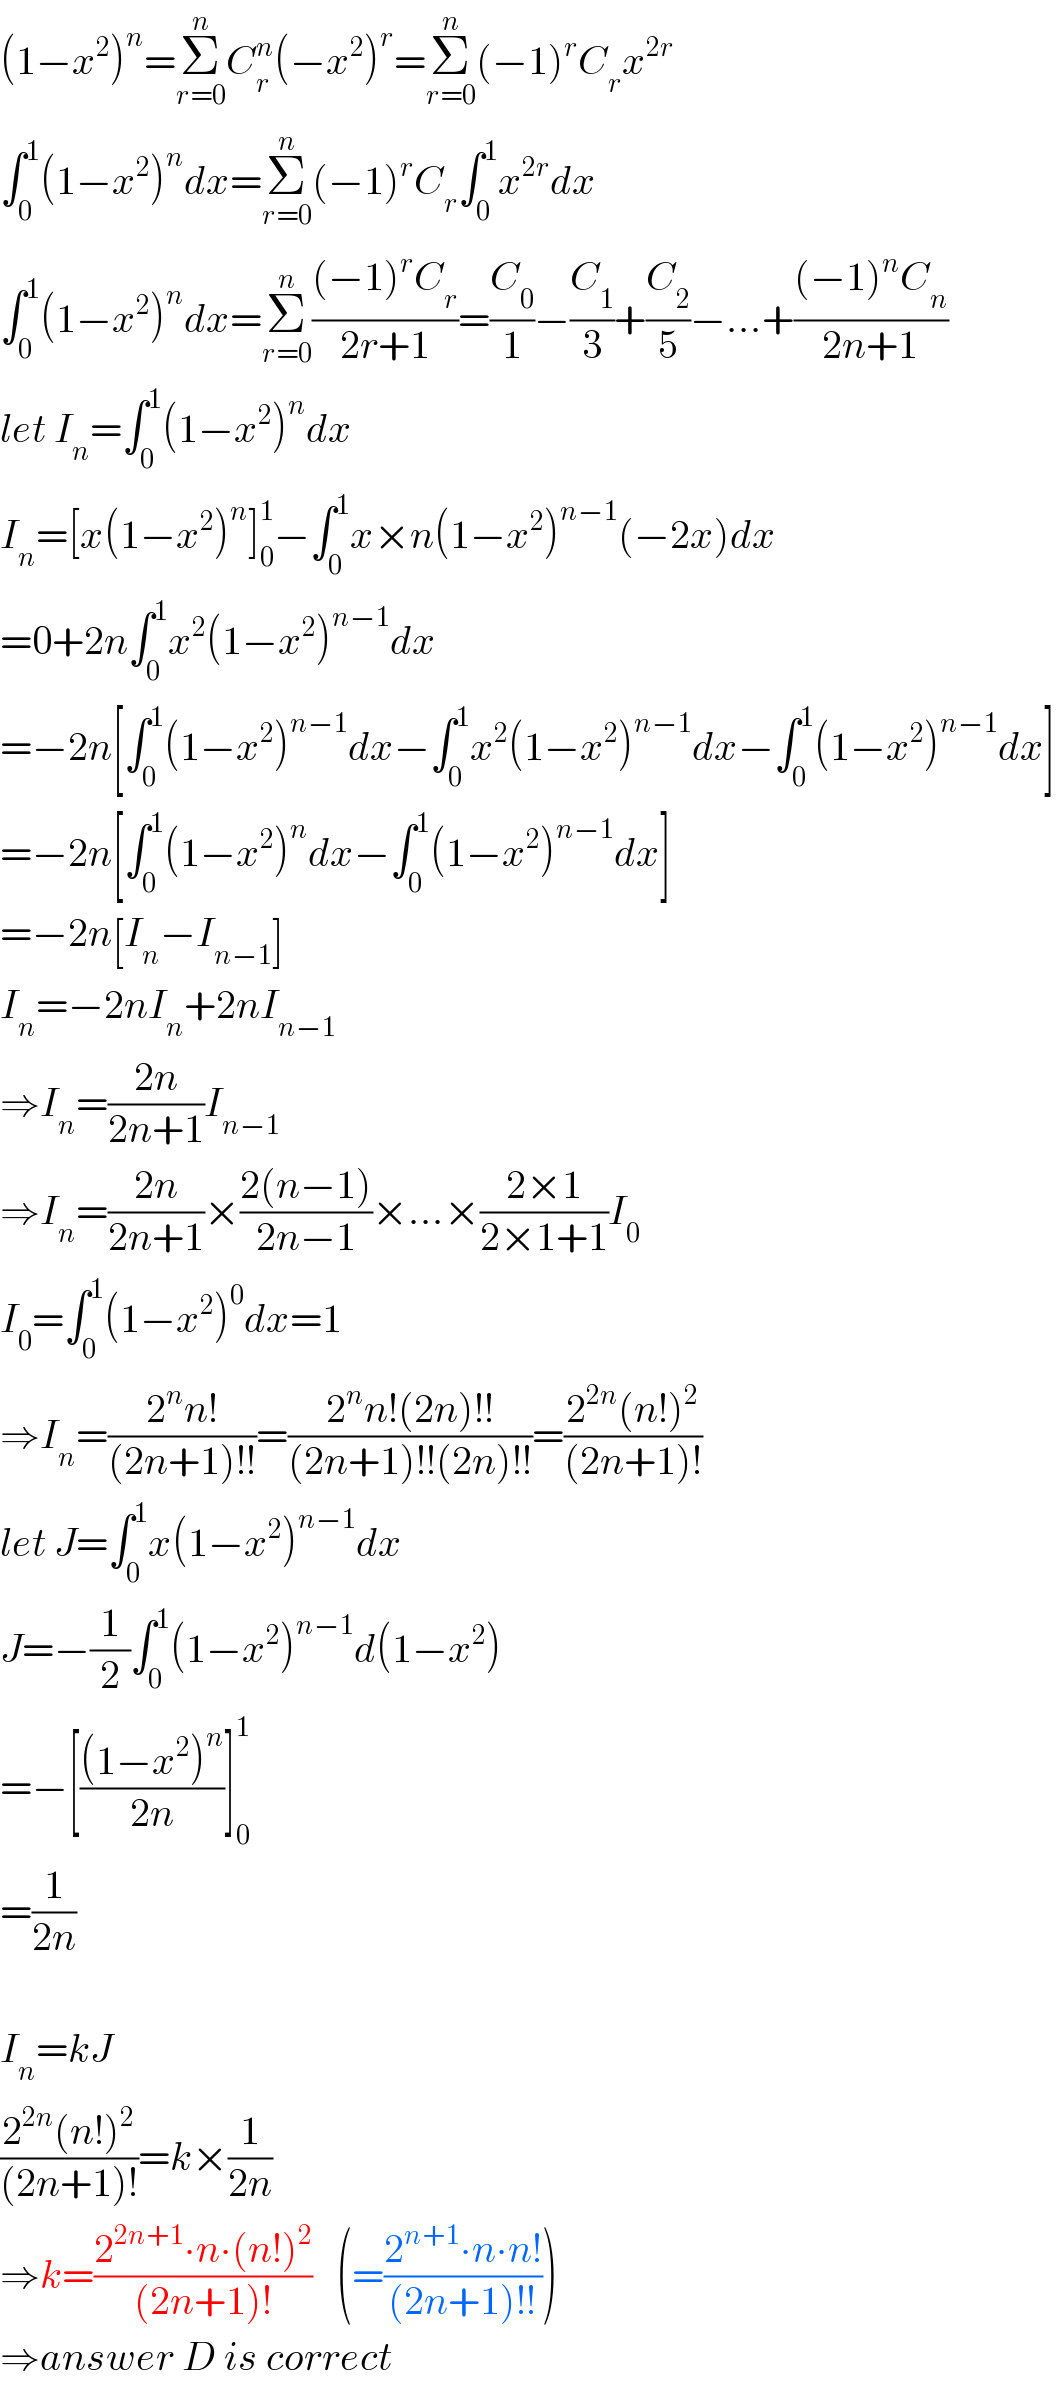 (1−x^2 )^n =Σ_(r=0) ^n C_r ^n (−x^2 )^r =Σ_(r=0) ^n (−1)^r C_r x^(2r)   ∫_0 ^1 (1−x^2 )^n dx=Σ_(r=0) ^n (−1)^r C_r ∫_0 ^1 x^(2r) dx  ∫_0 ^1 (1−x^2 )^n dx=Σ_(r=0) ^n (((−1)^r C_r )/(2r+1))=(C_0 /1)−(C_1 /3)+(C_2 /5)−...+(((−1)^n C_n )/(2n+1))  let I_n =∫_0 ^1 (1−x^2 )^n dx  I_n =[x(1−x^2 )^n ]_0 ^1 −∫_0 ^1 x×n(1−x^2 )^(n−1) (−2x)dx  =0+2n∫_0 ^1 x^2 (1−x^2 )^(n−1) dx  =−2n[∫_0 ^1 (1−x^2 )^(n−1) dx−∫_0 ^1 x^2 (1−x^2 )^(n−1) dx−∫_0 ^1 (1−x^2 )^(n−1) dx]  =−2n[∫_0 ^1 (1−x^2 )^n dx−∫_0 ^1 (1−x^2 )^(n−1) dx]  =−2n[I_n −I_(n−1) ]  I_n =−2nI_n +2nI_(n−1)   ⇒I_n =((2n)/(2n+1))I_(n−1)   ⇒I_n =((2n)/(2n+1))×((2(n−1))/(2n−1))×...×((2×1)/(2×1+1))I_0   I_0 =∫_0 ^1 (1−x^2 )^0 dx=1  ⇒I_n =((2^n n!)/((2n+1)!!))=((2^n n!(2n)!!)/((2n+1)!!(2n)!!))=((2^(2n) (n!)^2 )/((2n+1)!))  let J=∫_0 ^1 x(1−x^2 )^(n−1) dx  J=−(1/2)∫_0 ^1 (1−x^2 )^(n−1) d(1−x^2 )  =−[(((1−x^2 )^n )/(2n))]_0 ^1   =(1/(2n))    I_n =kJ  ((2^(2n) (n!)^2 )/((2n+1)!))=k×(1/(2n))  ⇒k=((2^(2n+1) ∙n∙(n!)^2 )/((2n+1)!))   (=((2^(n+1) ∙n∙n!)/((2n+1)!!)))  ⇒answer D is correct  